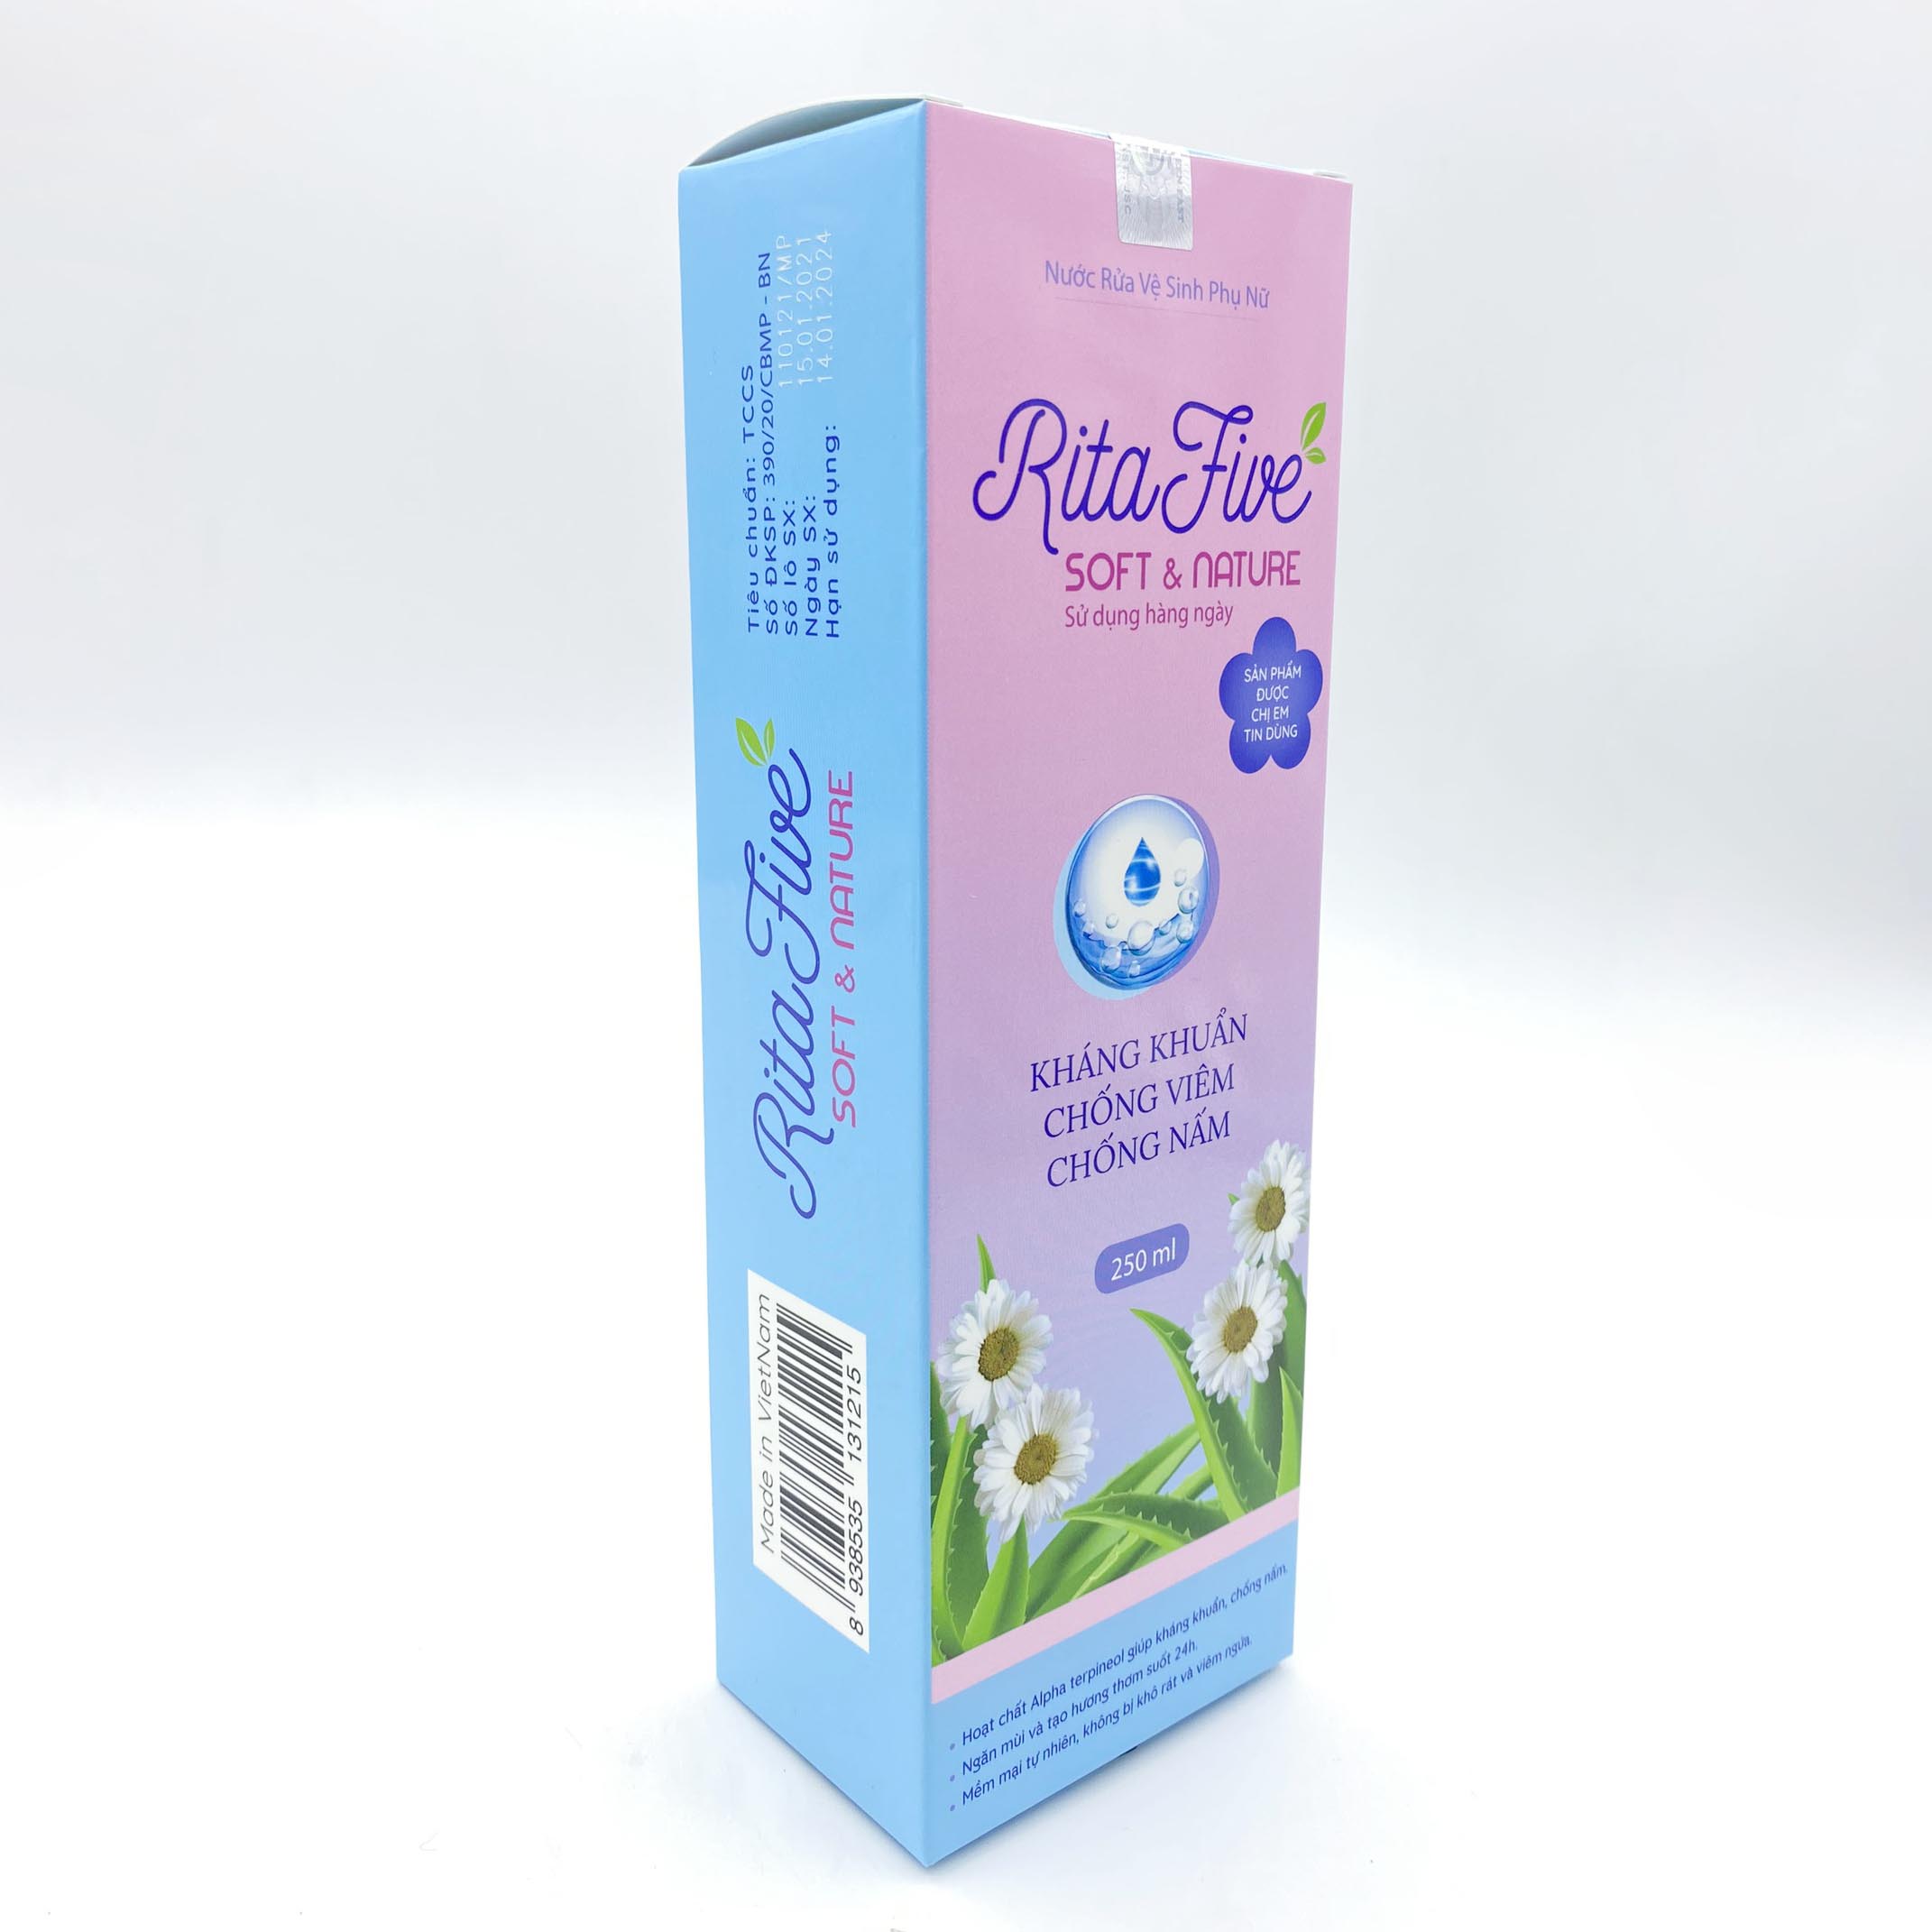 Dung Dịch Vệ Sinh Phụ Nữ Ritafive (250ml) - Mềm mại tự nhiên, ngăn ngừa viêm nhiễm, kháng khuẩn, chống nấm, ngăn mùi giúp bạn tự tin trọn 24h